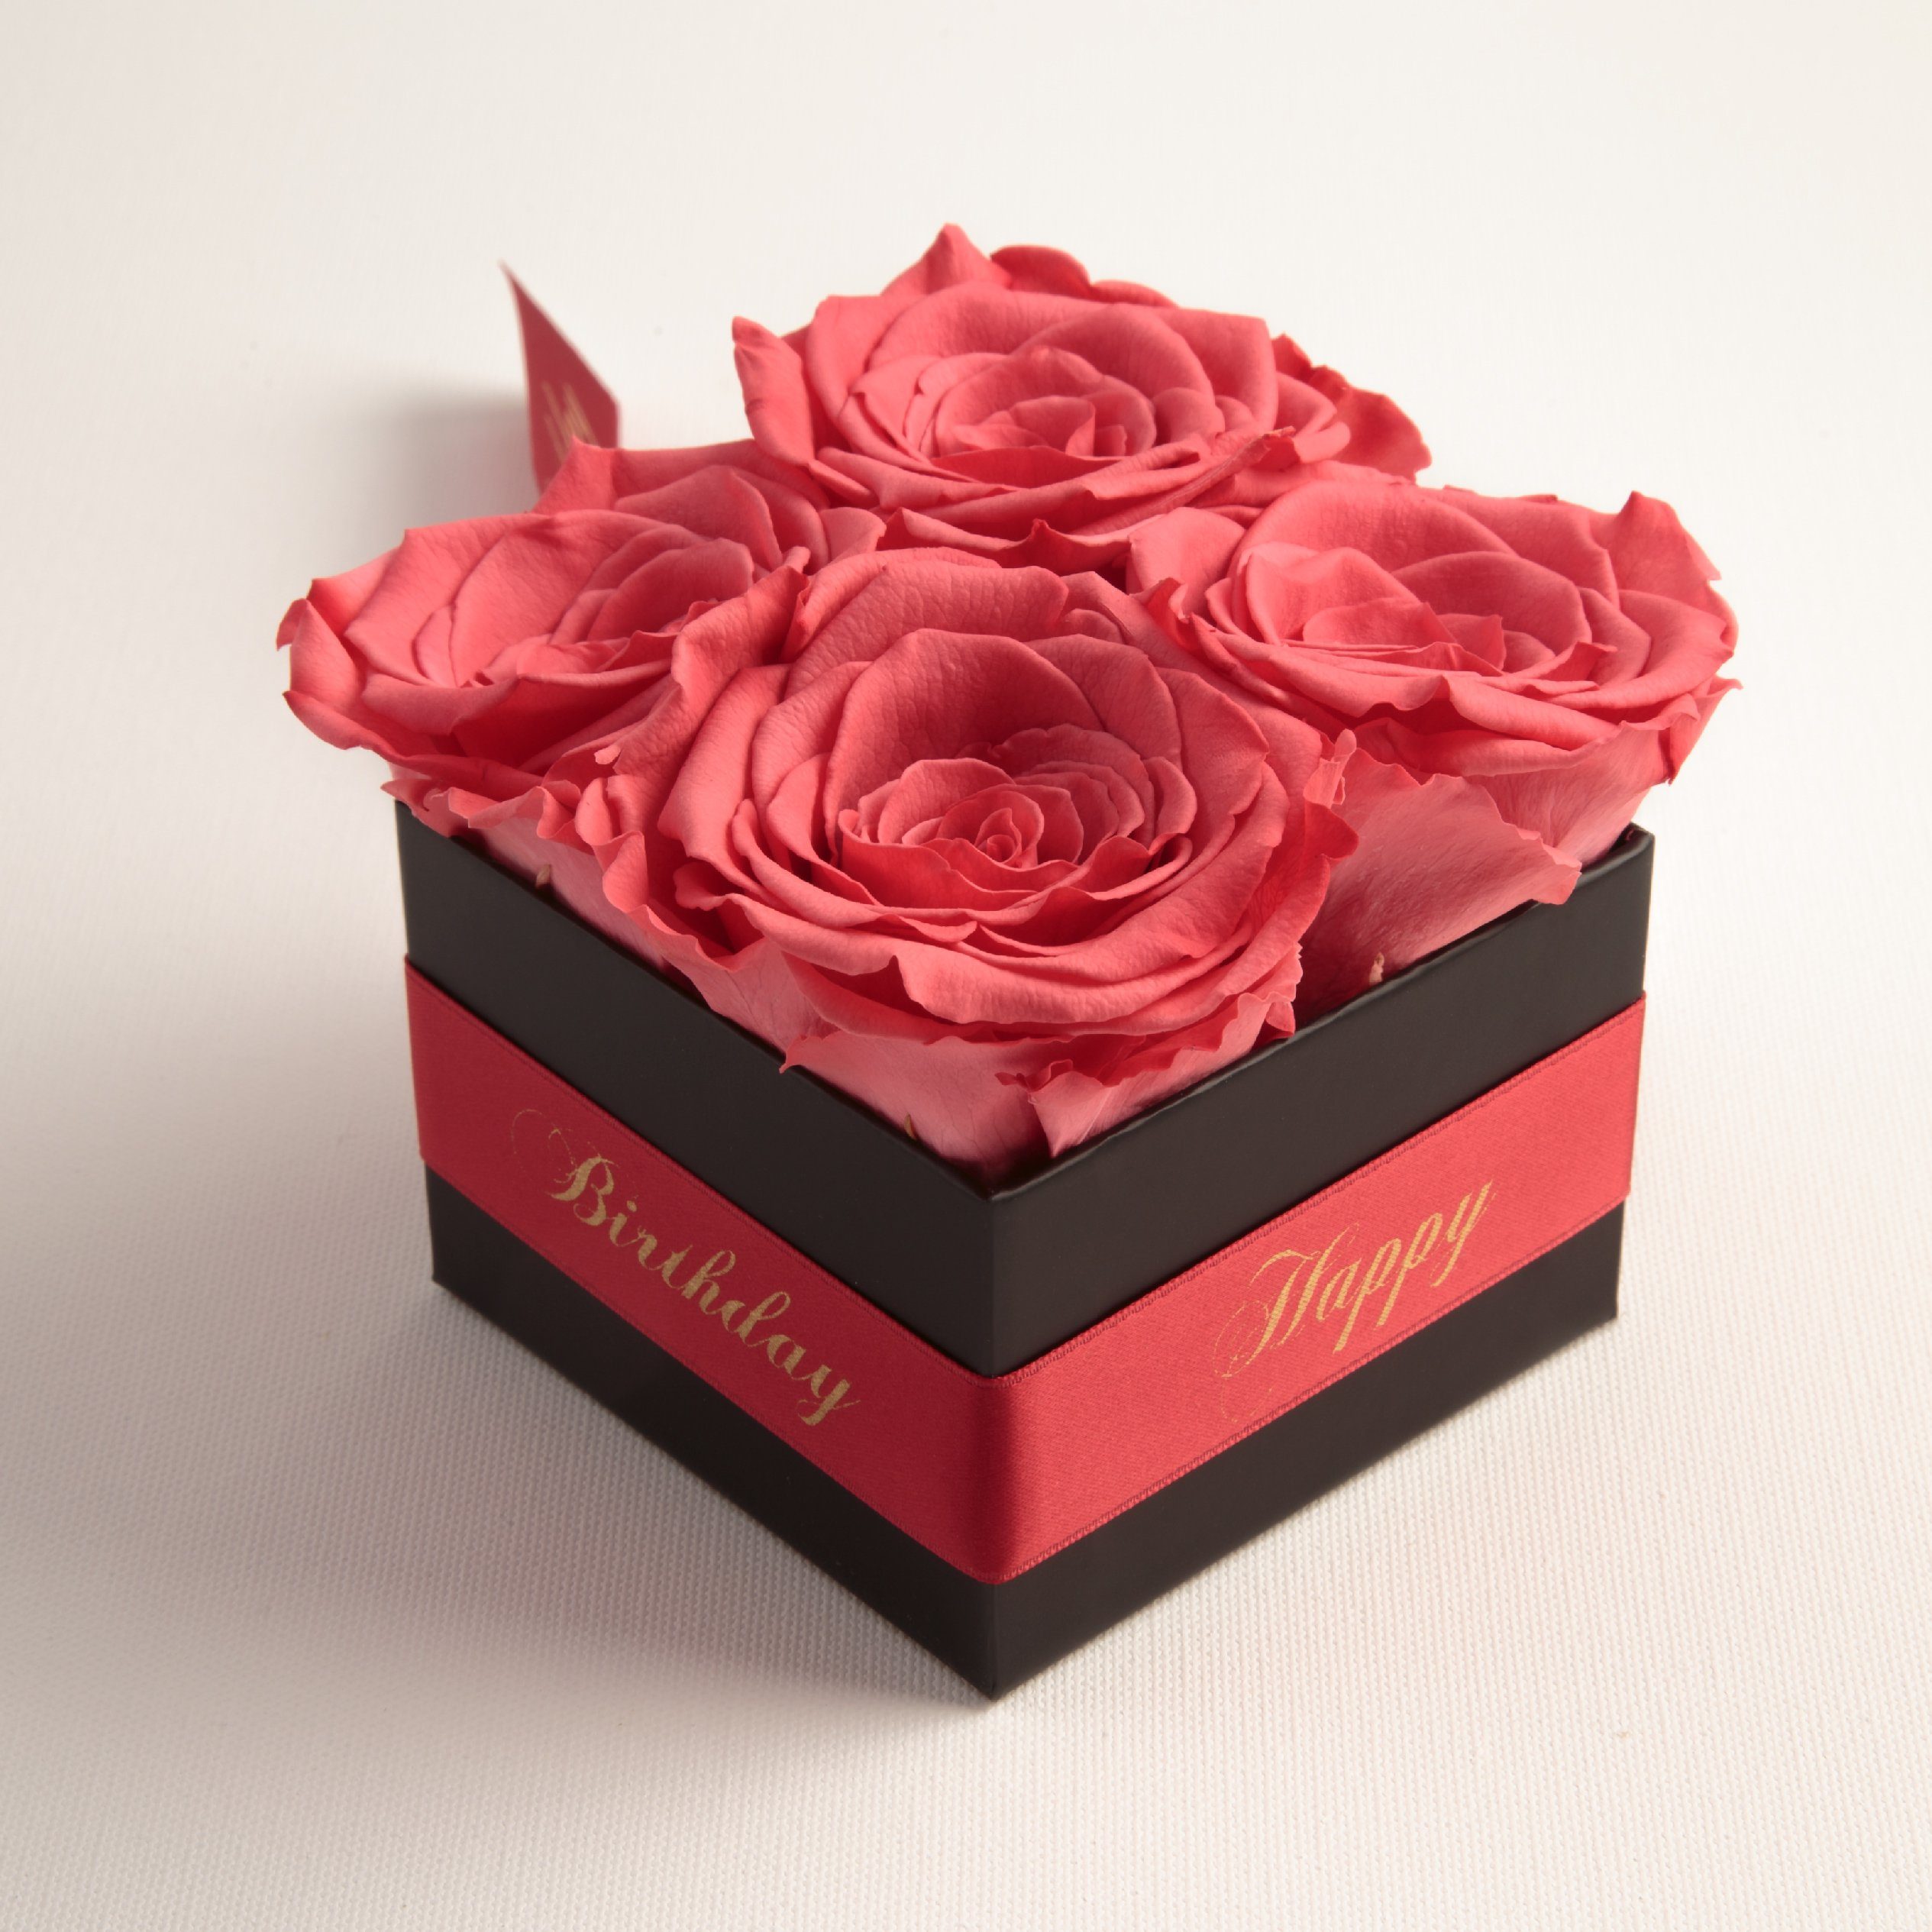 Kunstblume Infinity Rosenbox Happy Geschenk korall-rot Rosen ROSEMARIE Rose, echte cm, Jahre Höhe 8.5 haltbar Heidelberg, Birthday Frauen 3 Geburtstag SCHULZ für